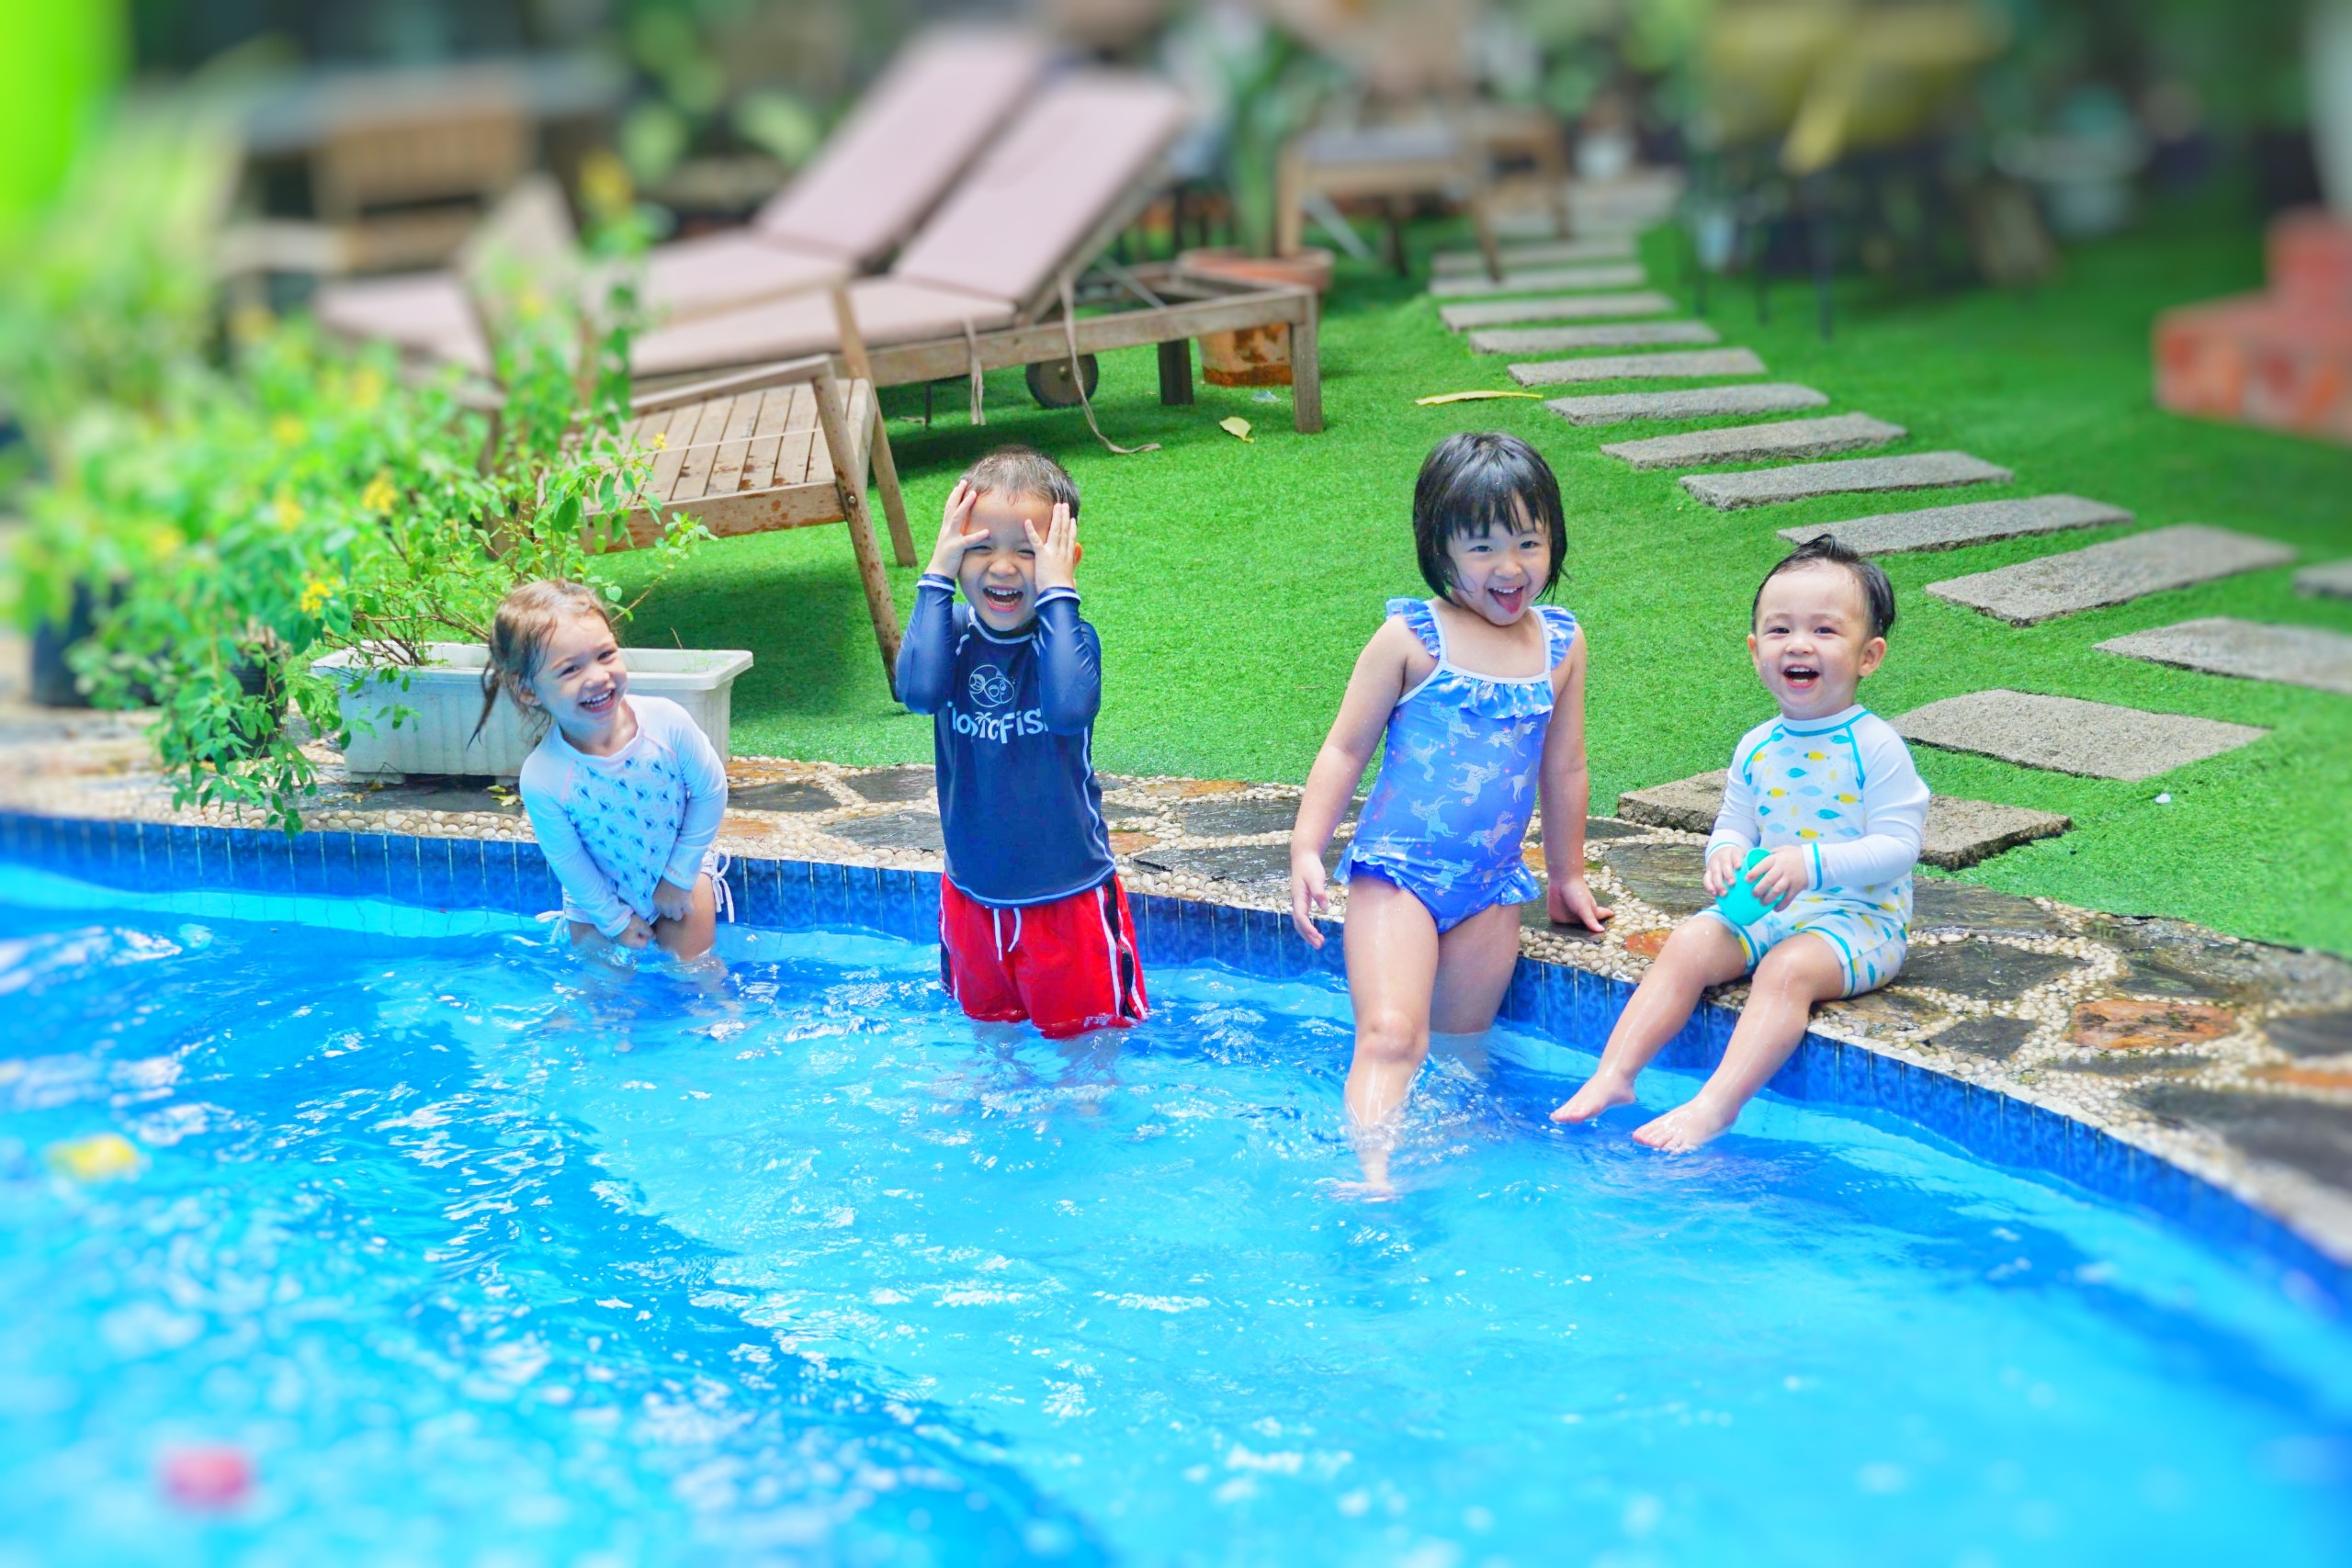 Áo bơi chống nắng tay dài cho bé trai - Blue Rashtop TropicFish